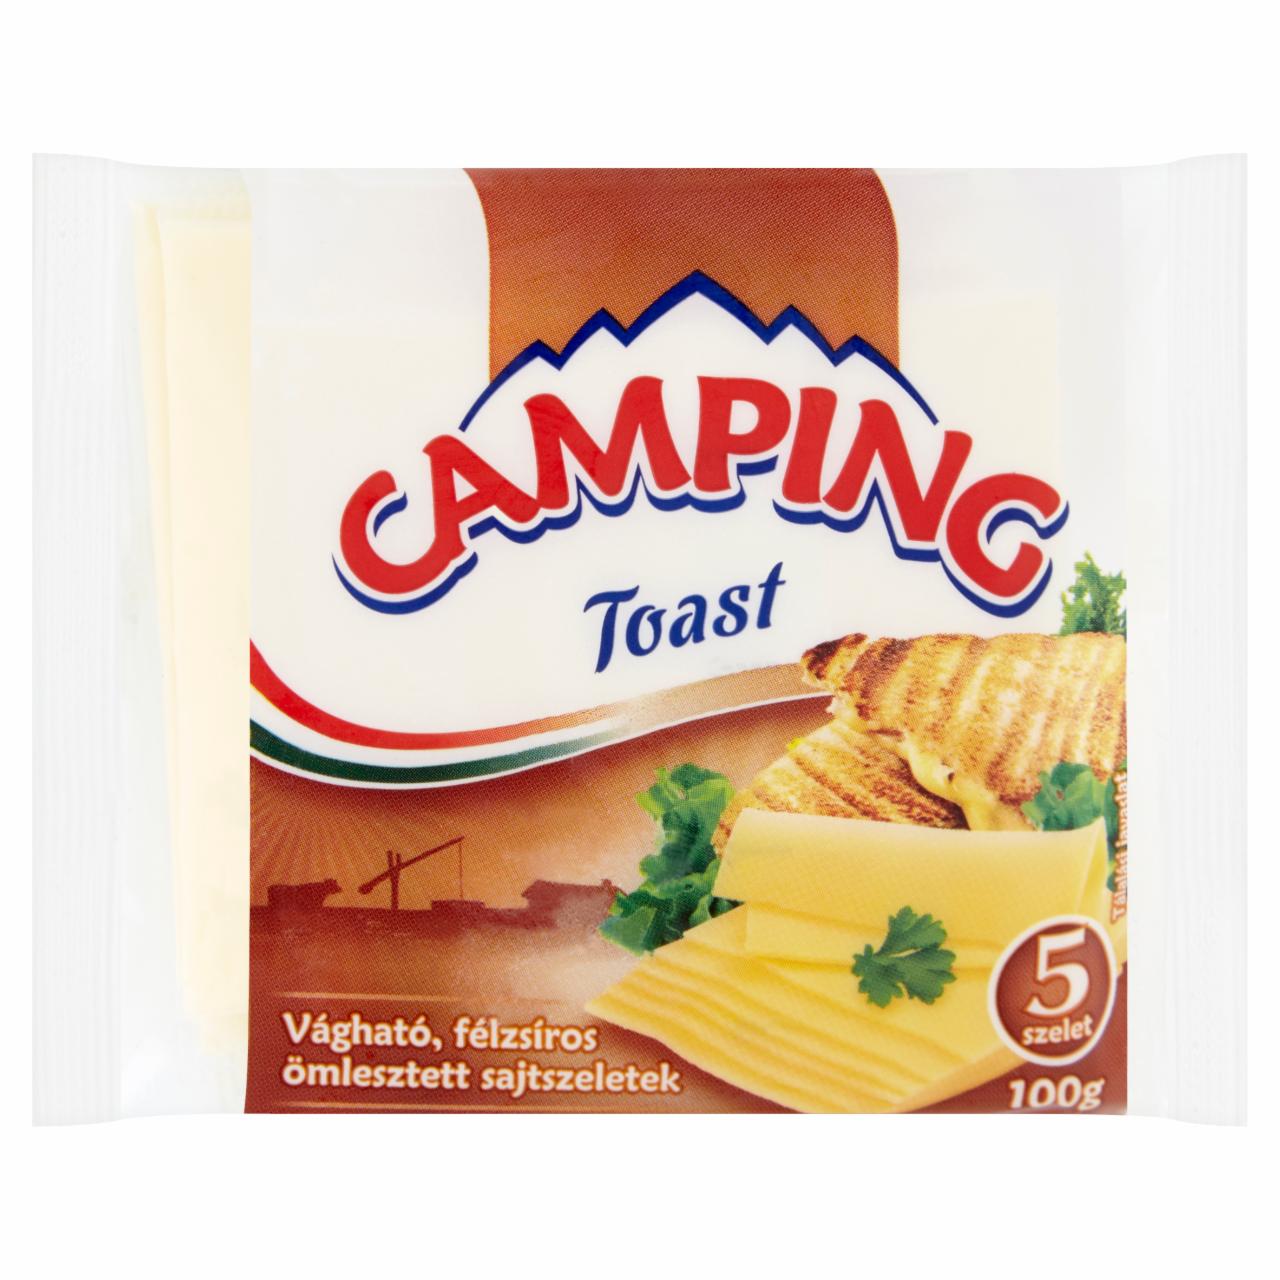 Képek - Camping Toast félzsíros ömlesztett sajtszeletek 5 db 100 g